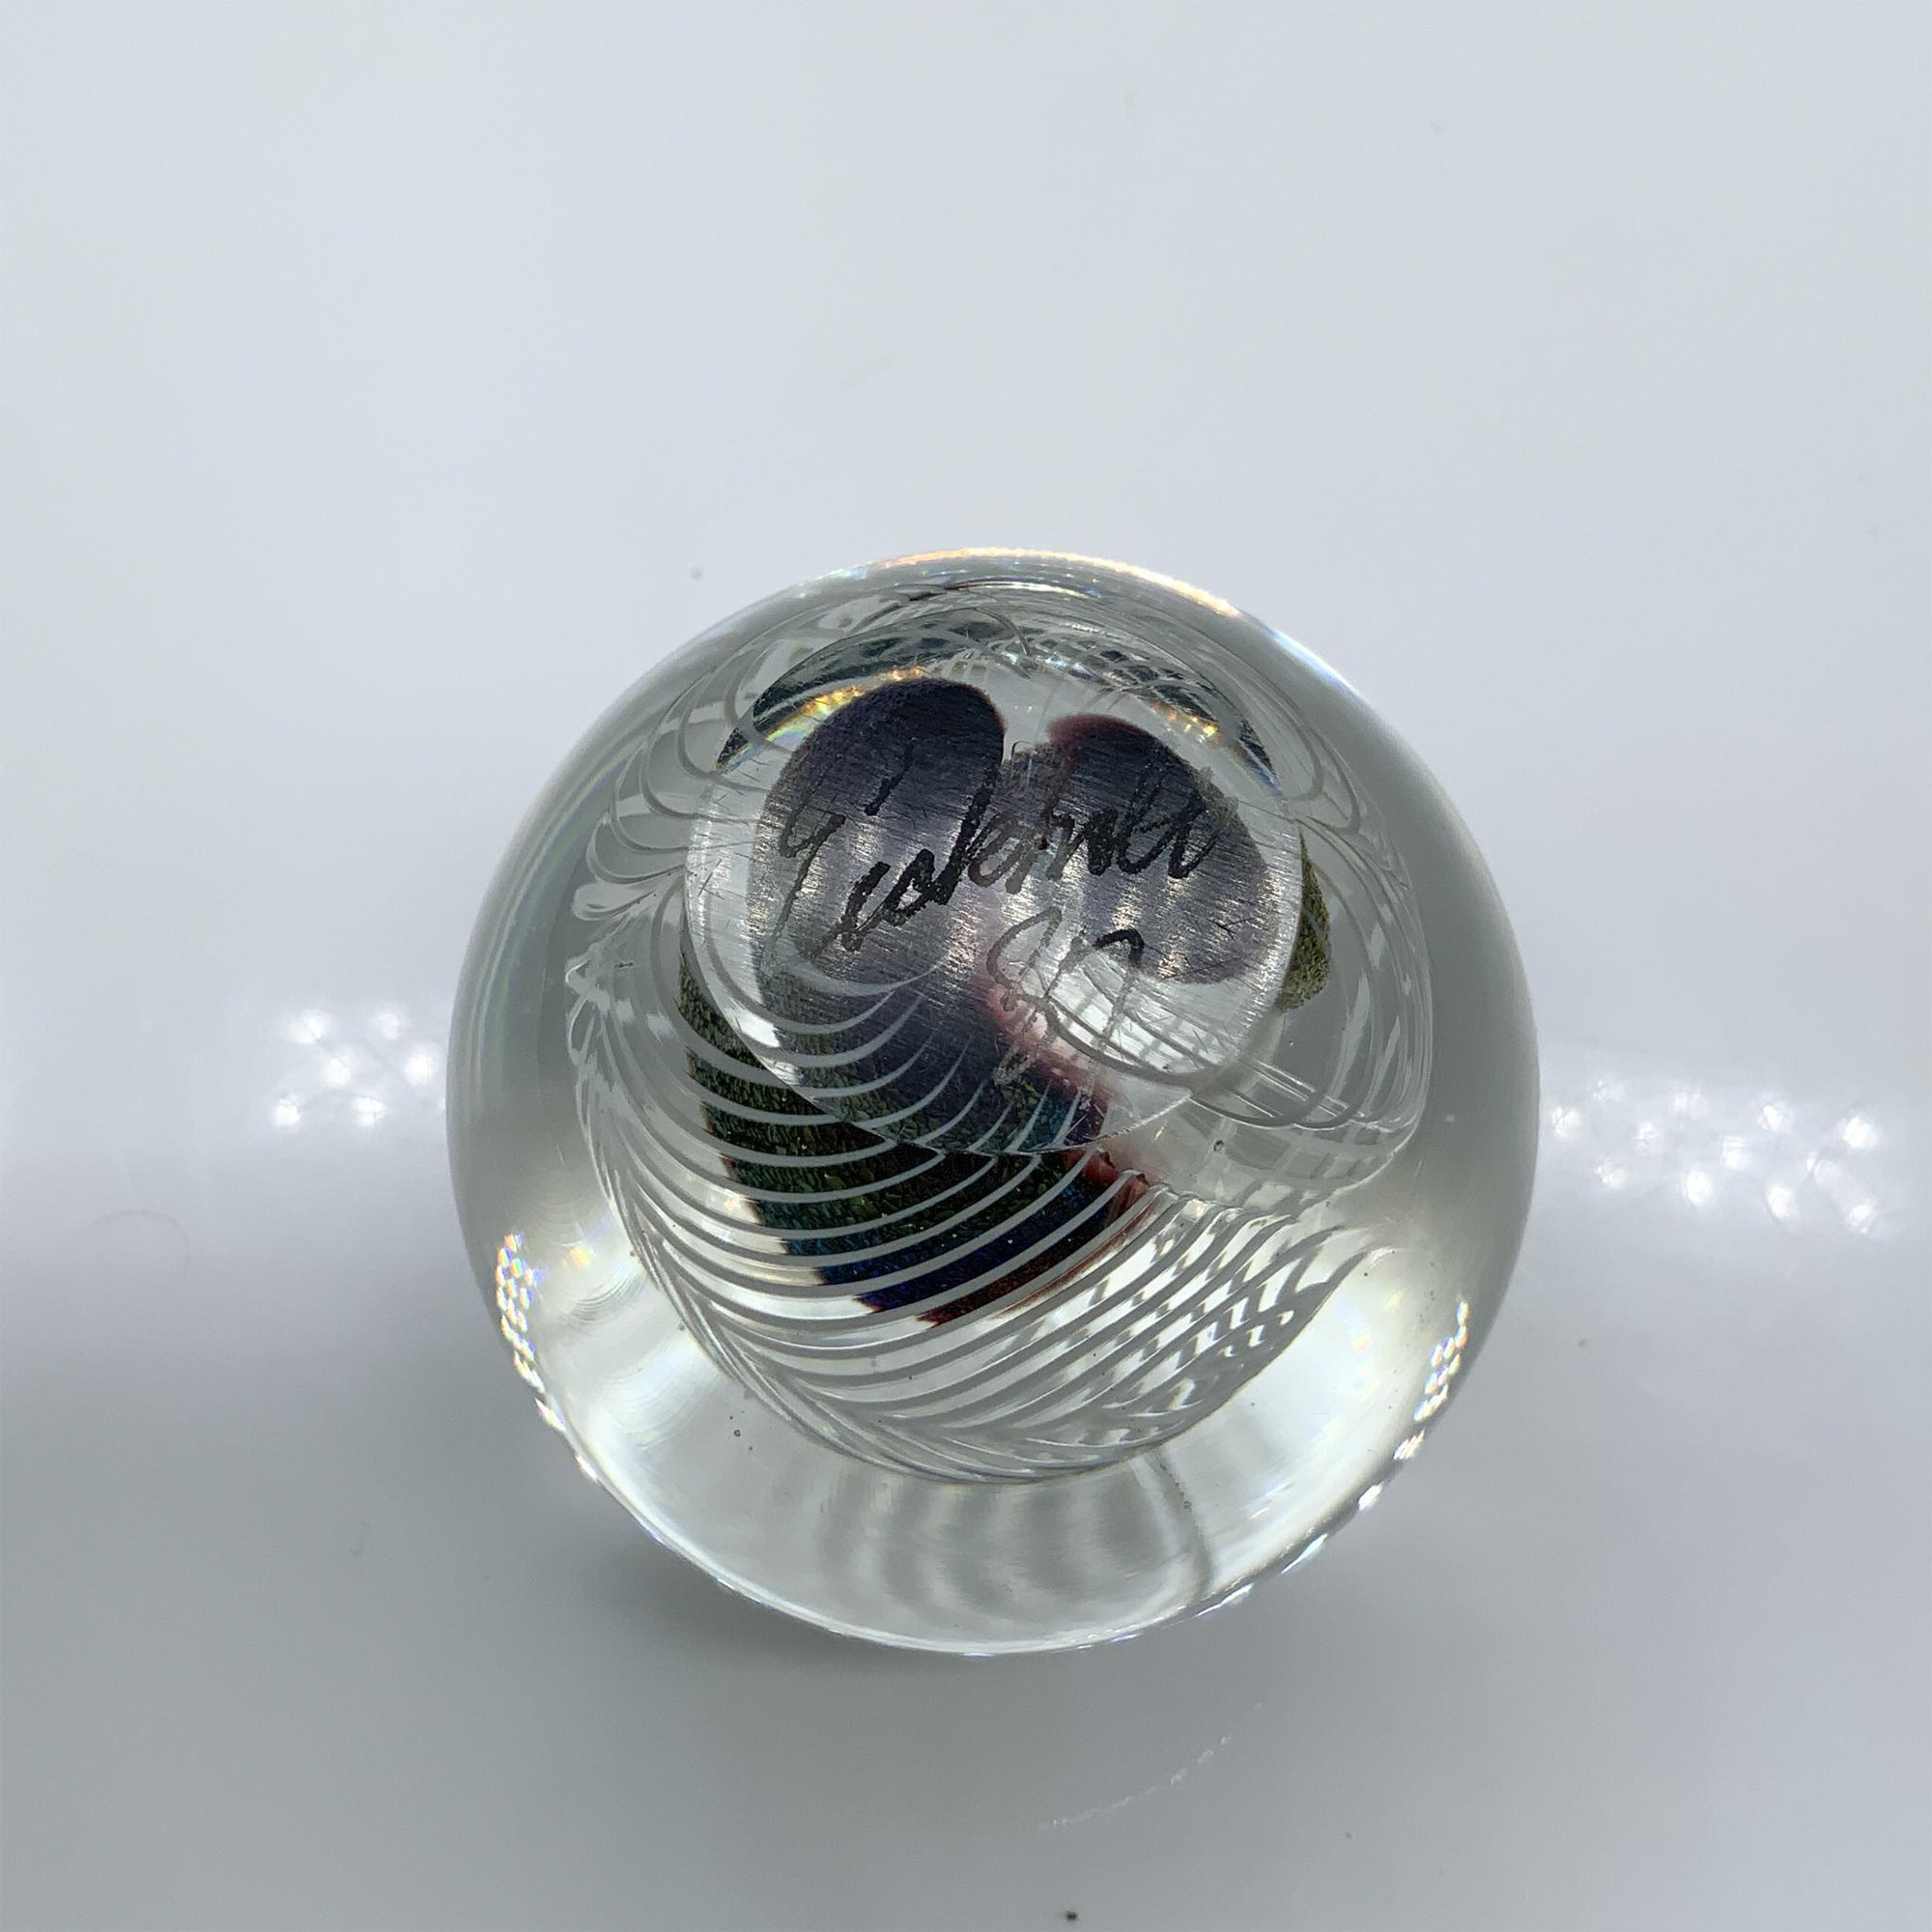 Robert Eickholt Iridescent Art Glass Paperweight, Signed - Image 5 of 5